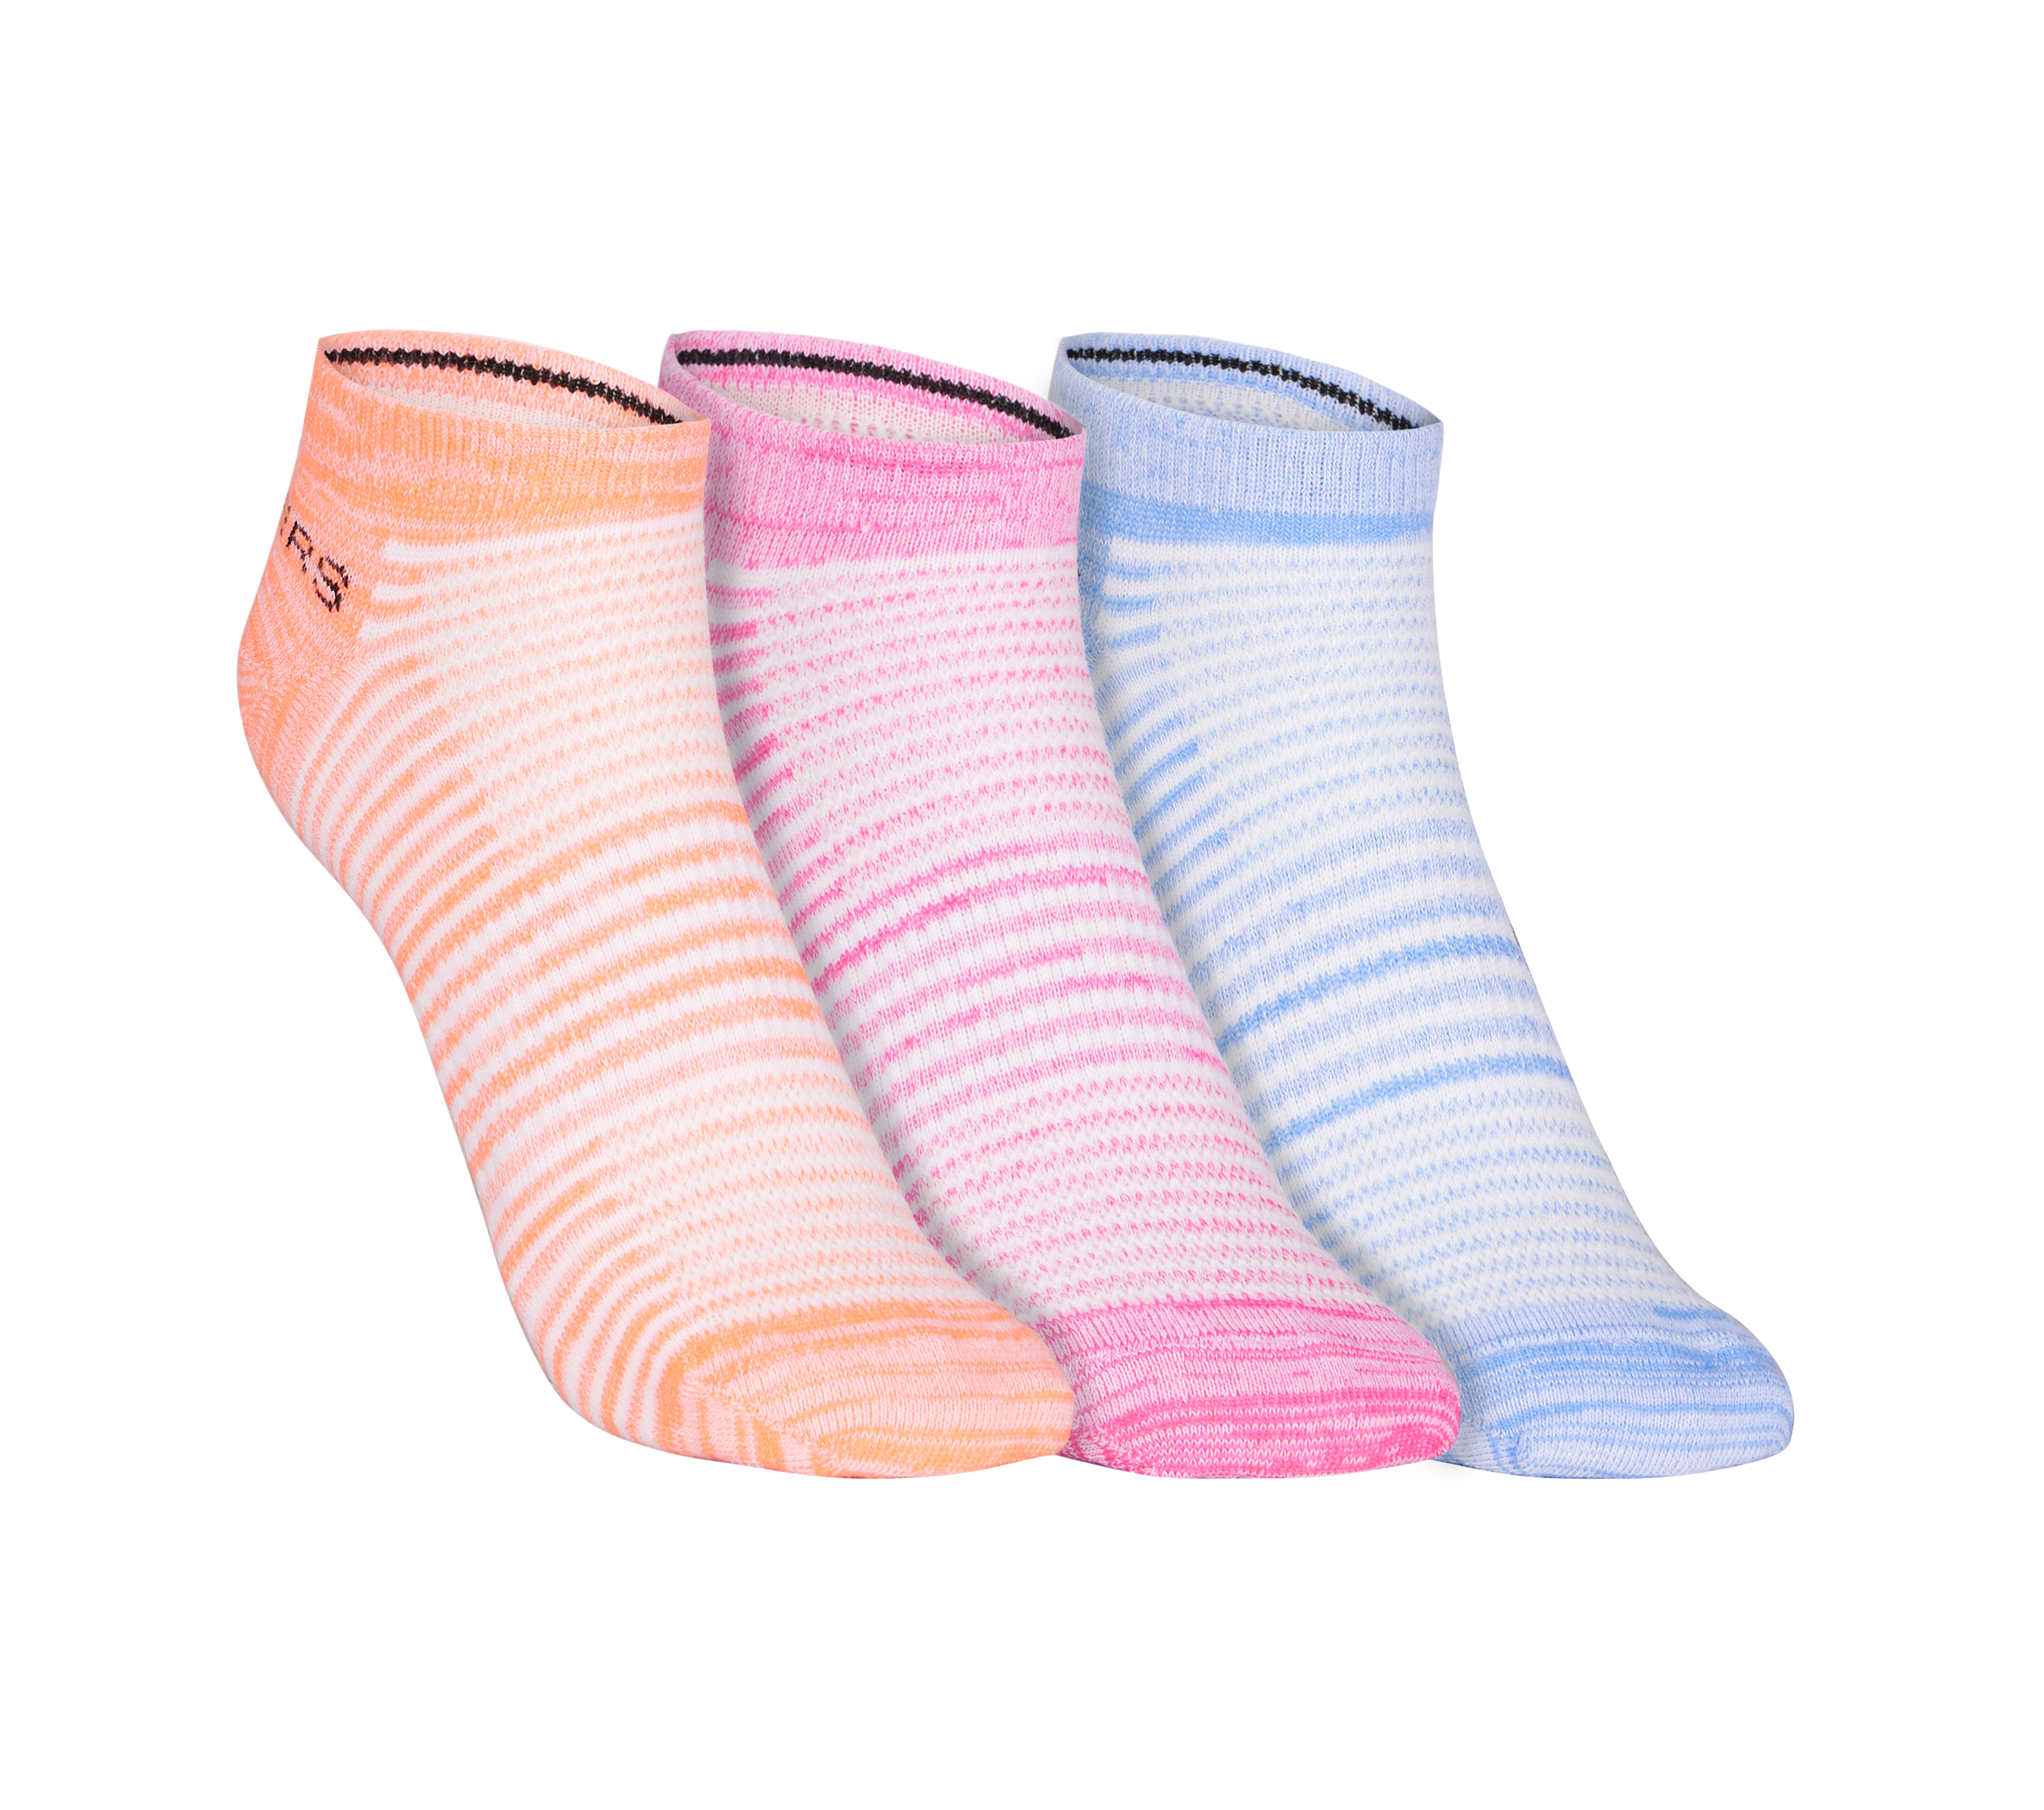 Skechers Girls' LOW CUT NON TERRY multi socks